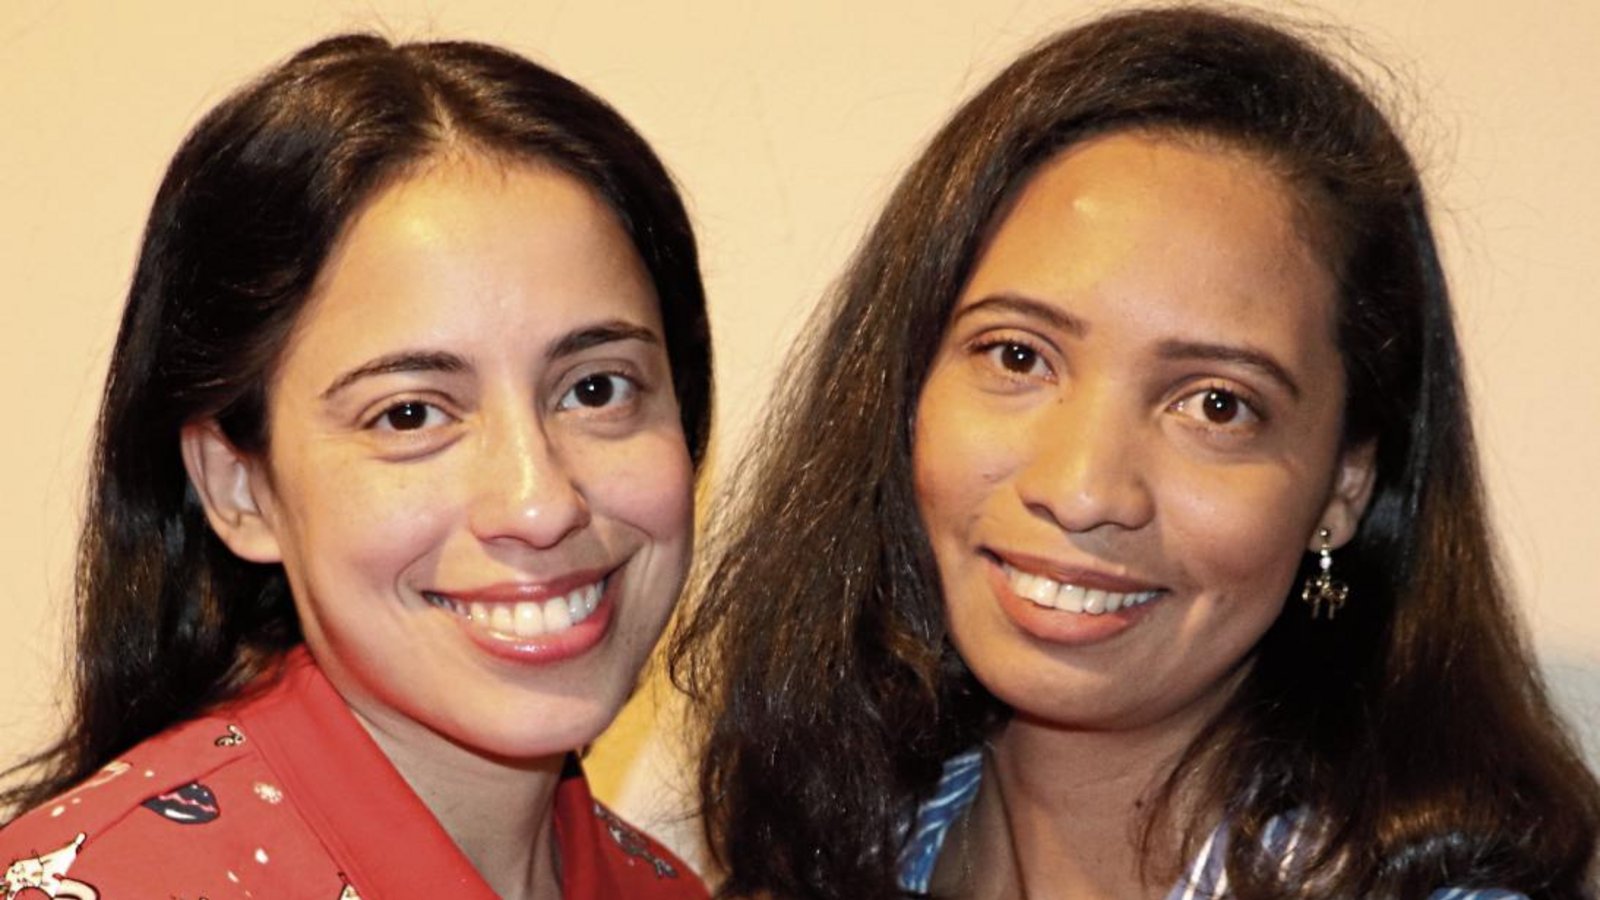 Die Freundschaft zwischen Jorleide de Oliviera Santos (rechts) und Laryssa Karolyne Galdino-Grau erleichtert den beiden, dass ihre Familien so weit weg sind. Foto: Gergen